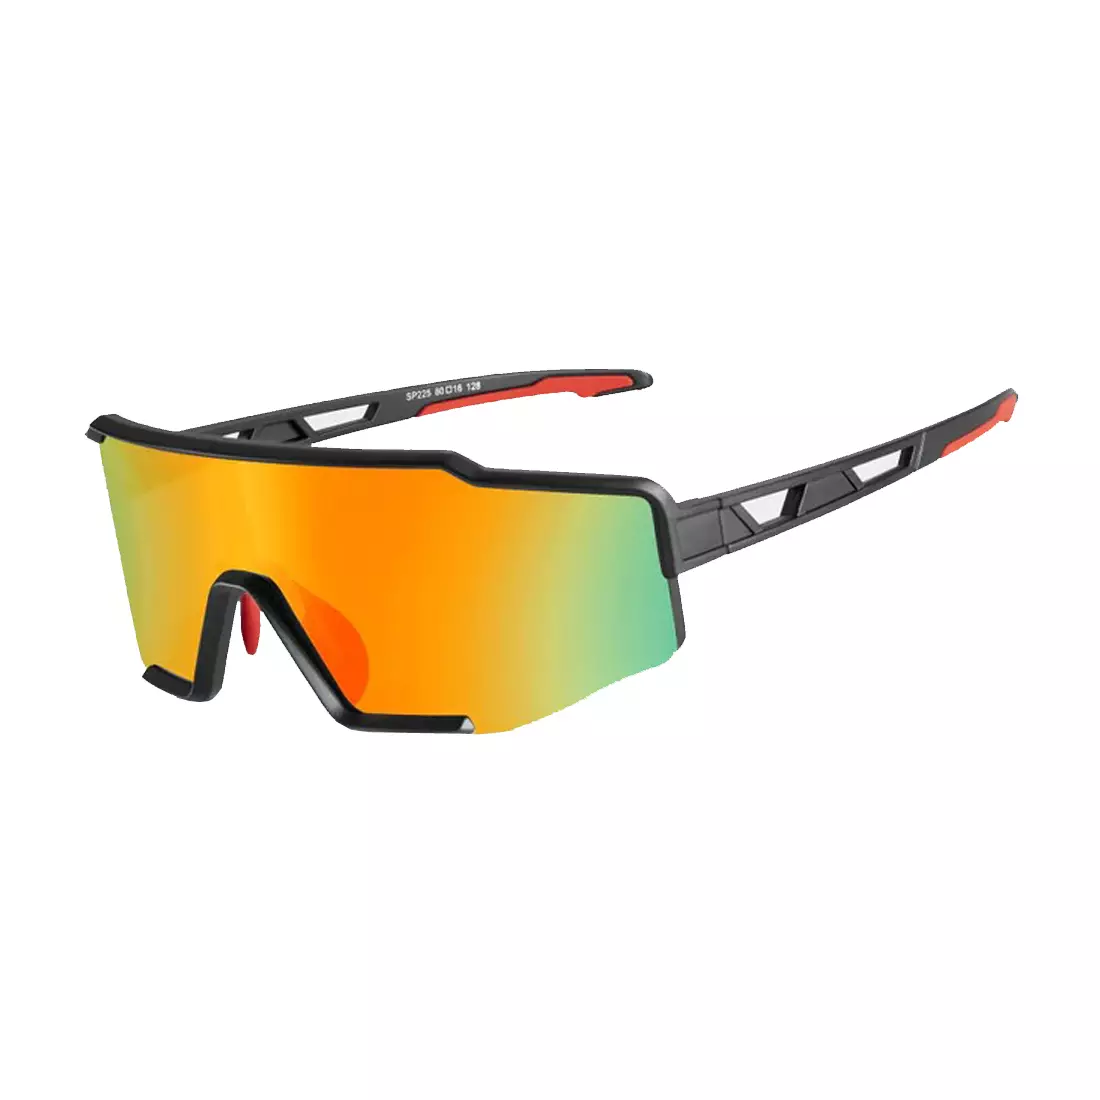 Rockbros SP225BK kerékpár szemüveg / sport, polarizált, fekete és szürke